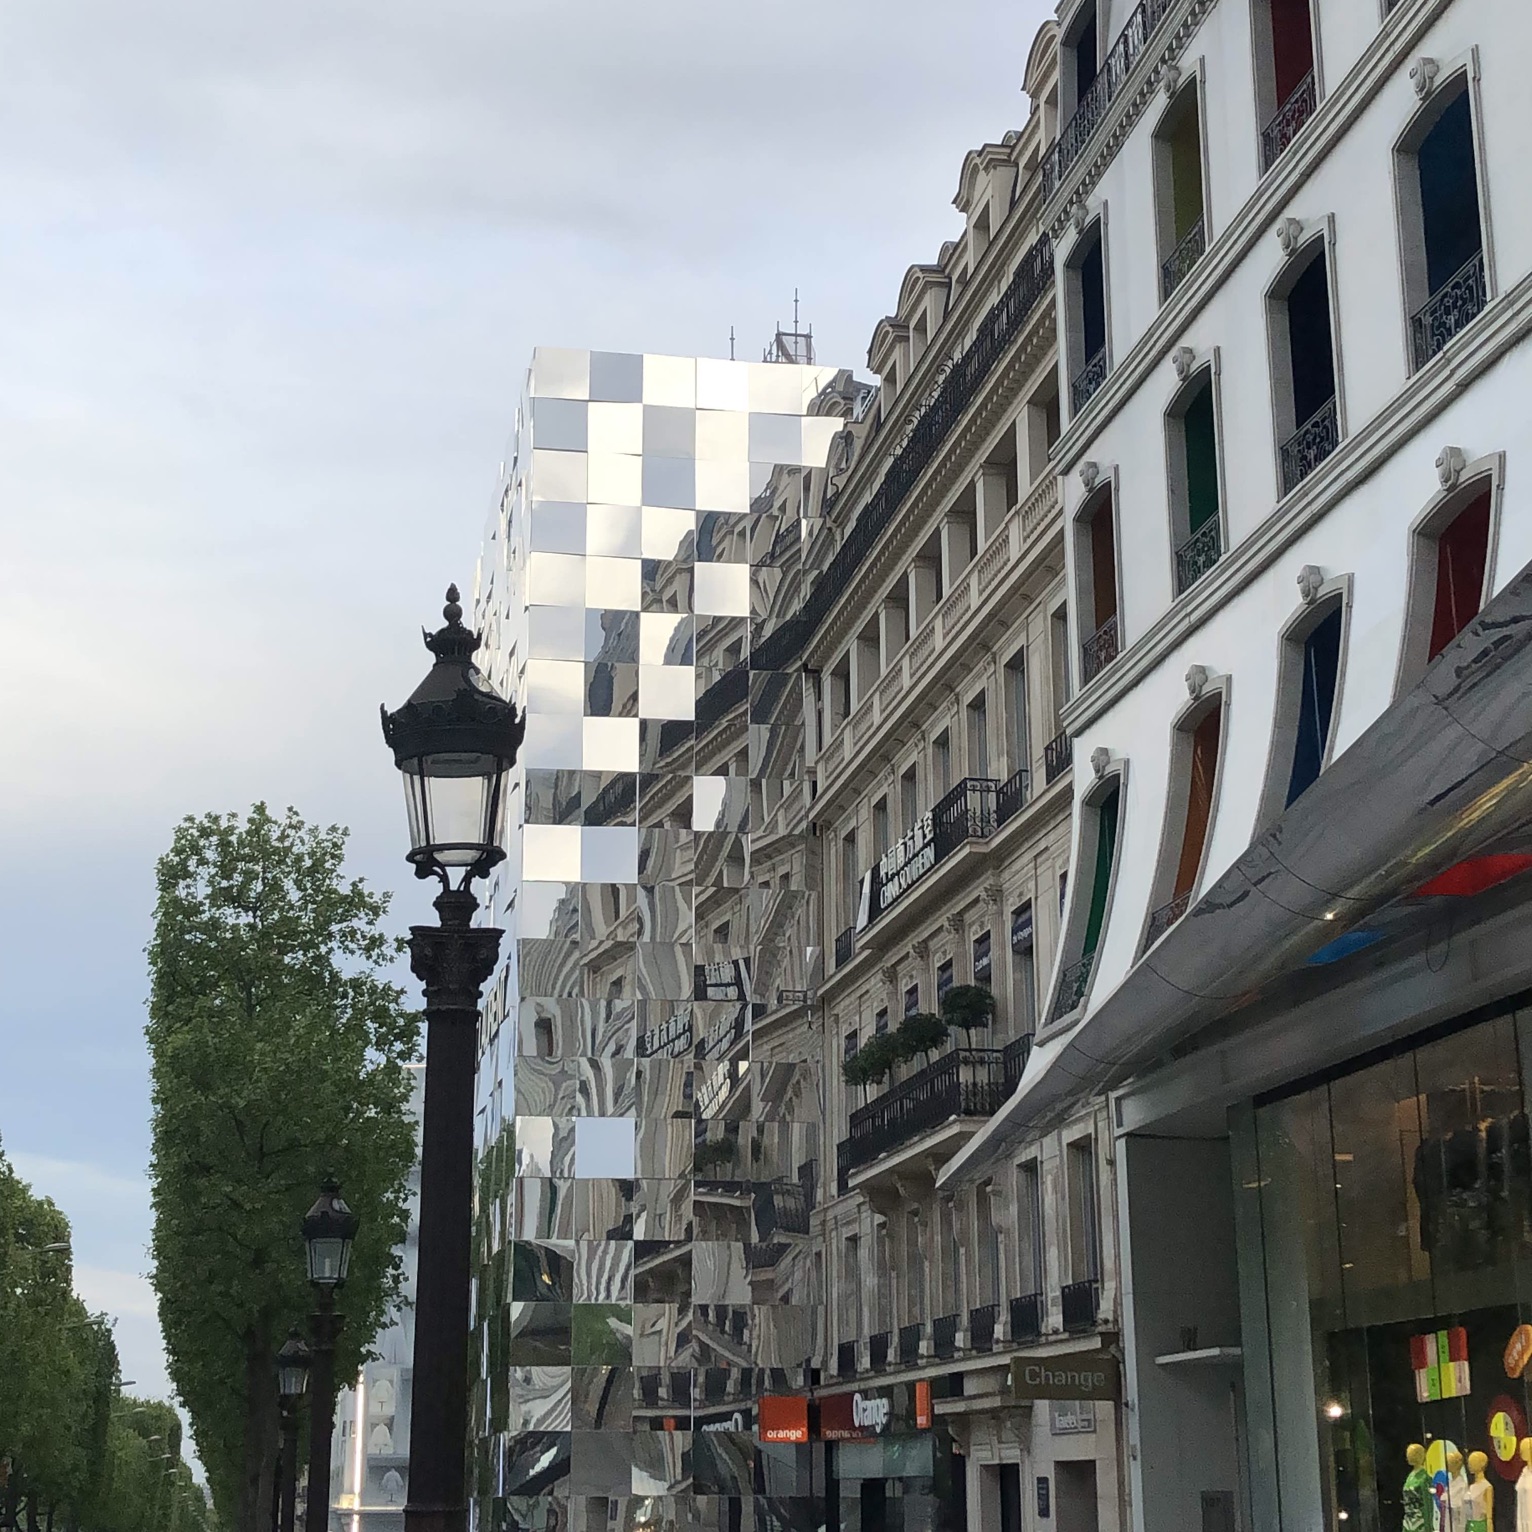 Champs-Élysées, Paris France 🇫🇷